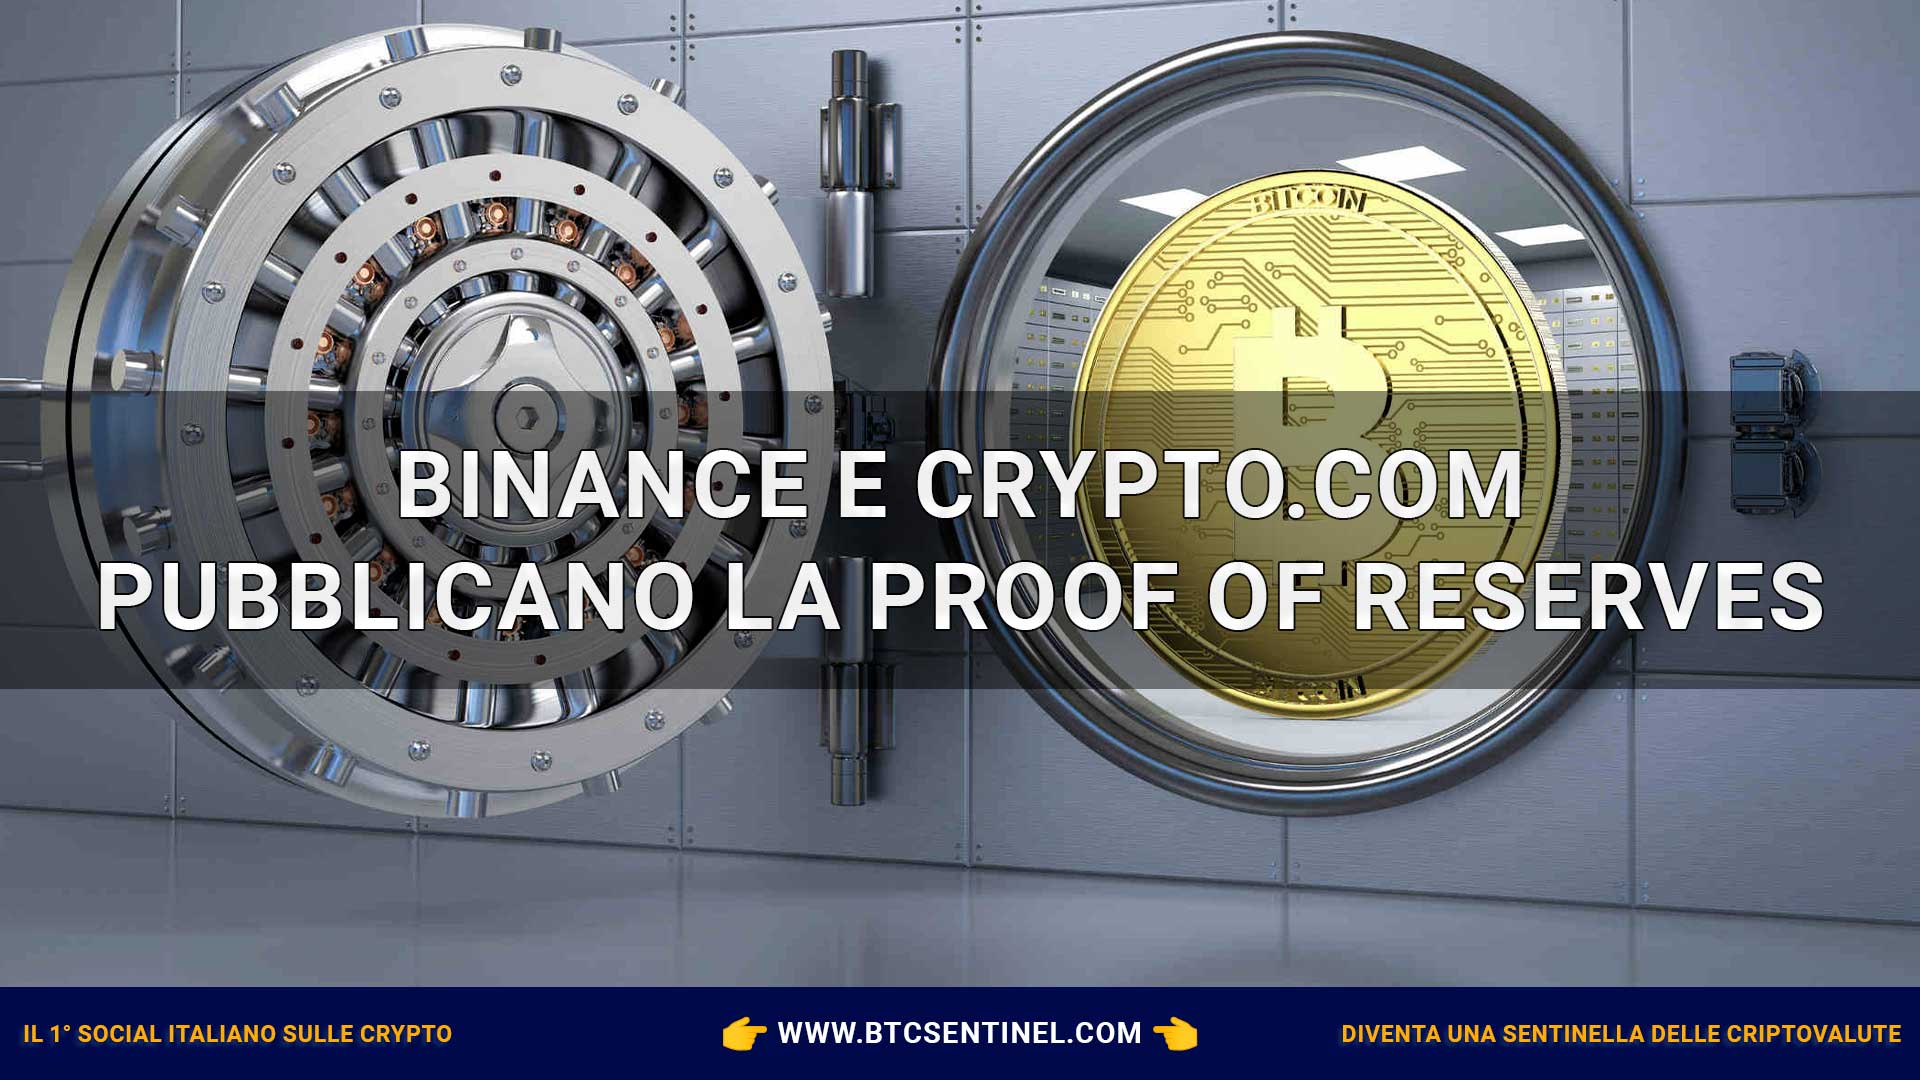 Binance e Crypto.com hanno pubblicato la Proof of Reserve